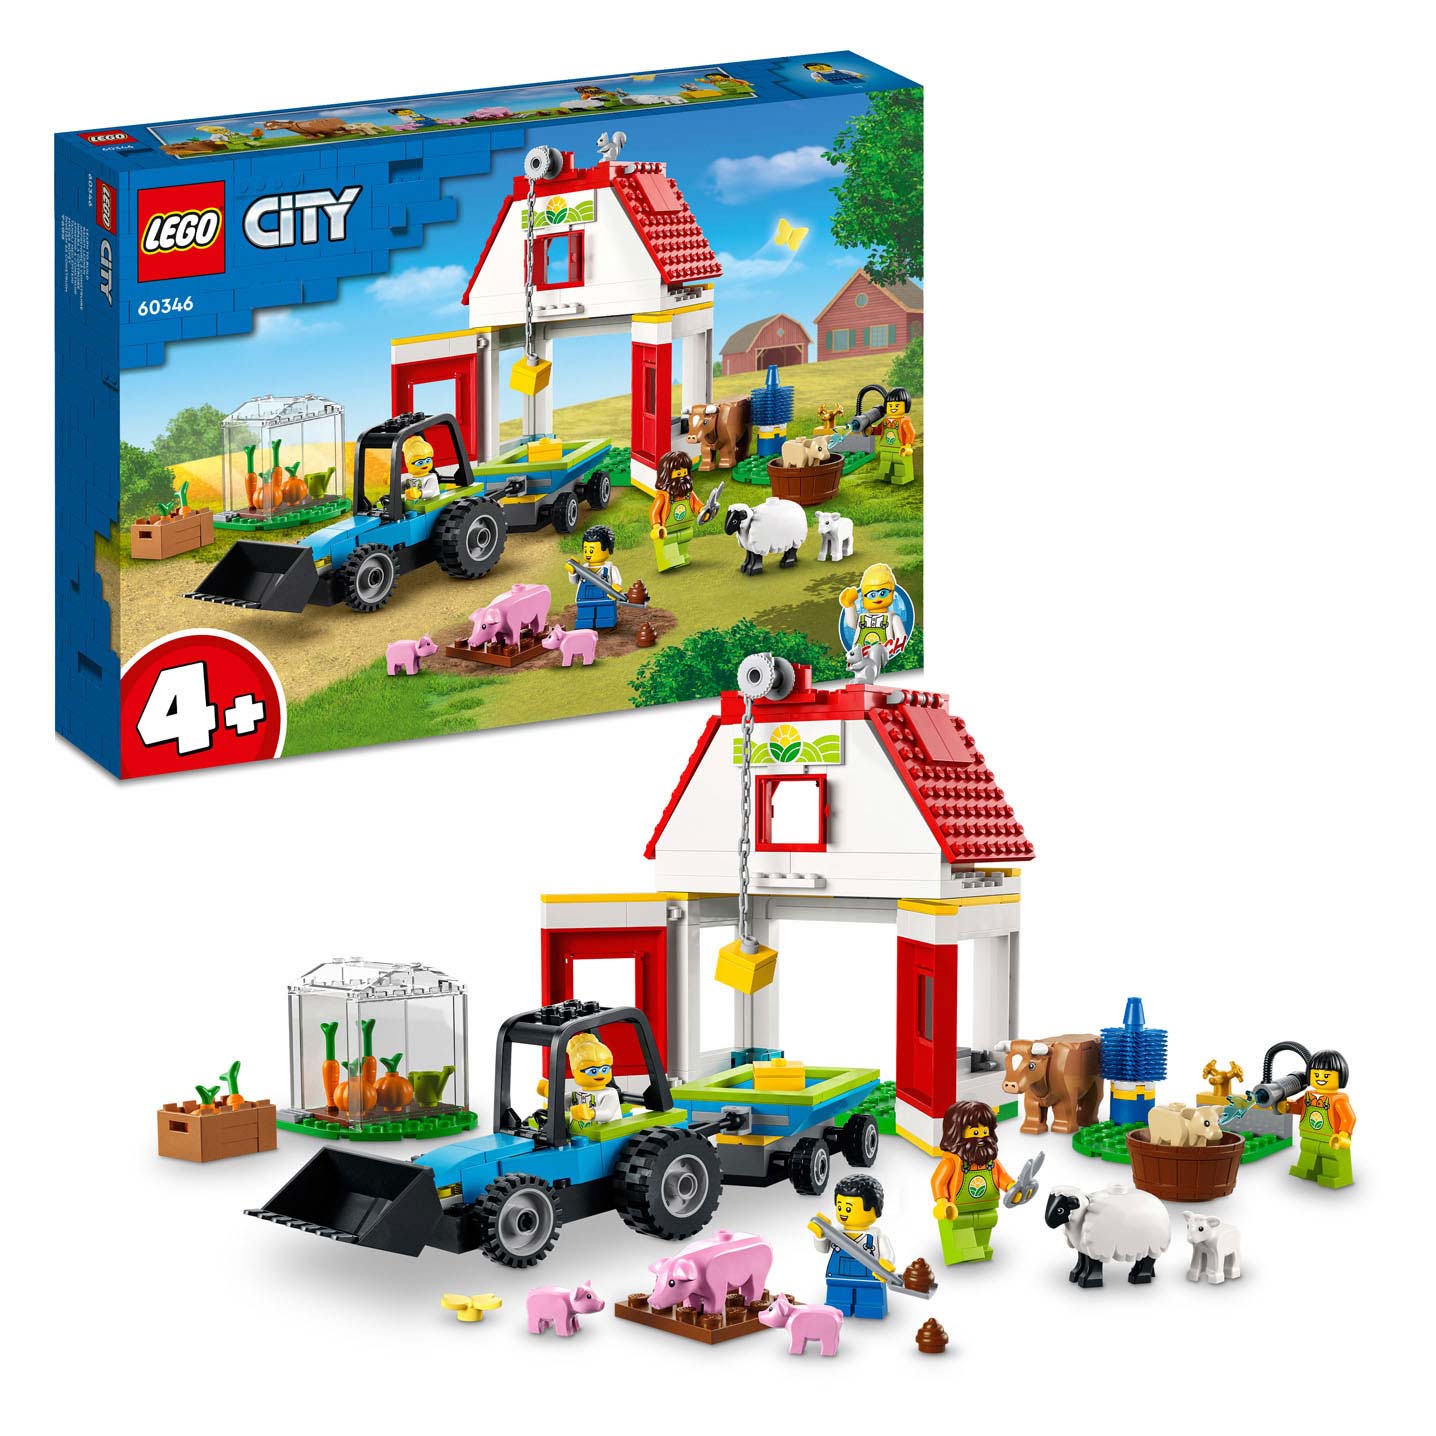 overzee Bloeden aankomen LEGO City 60346 Boerderij Dieren online ... | Lobbes Speelgoed België